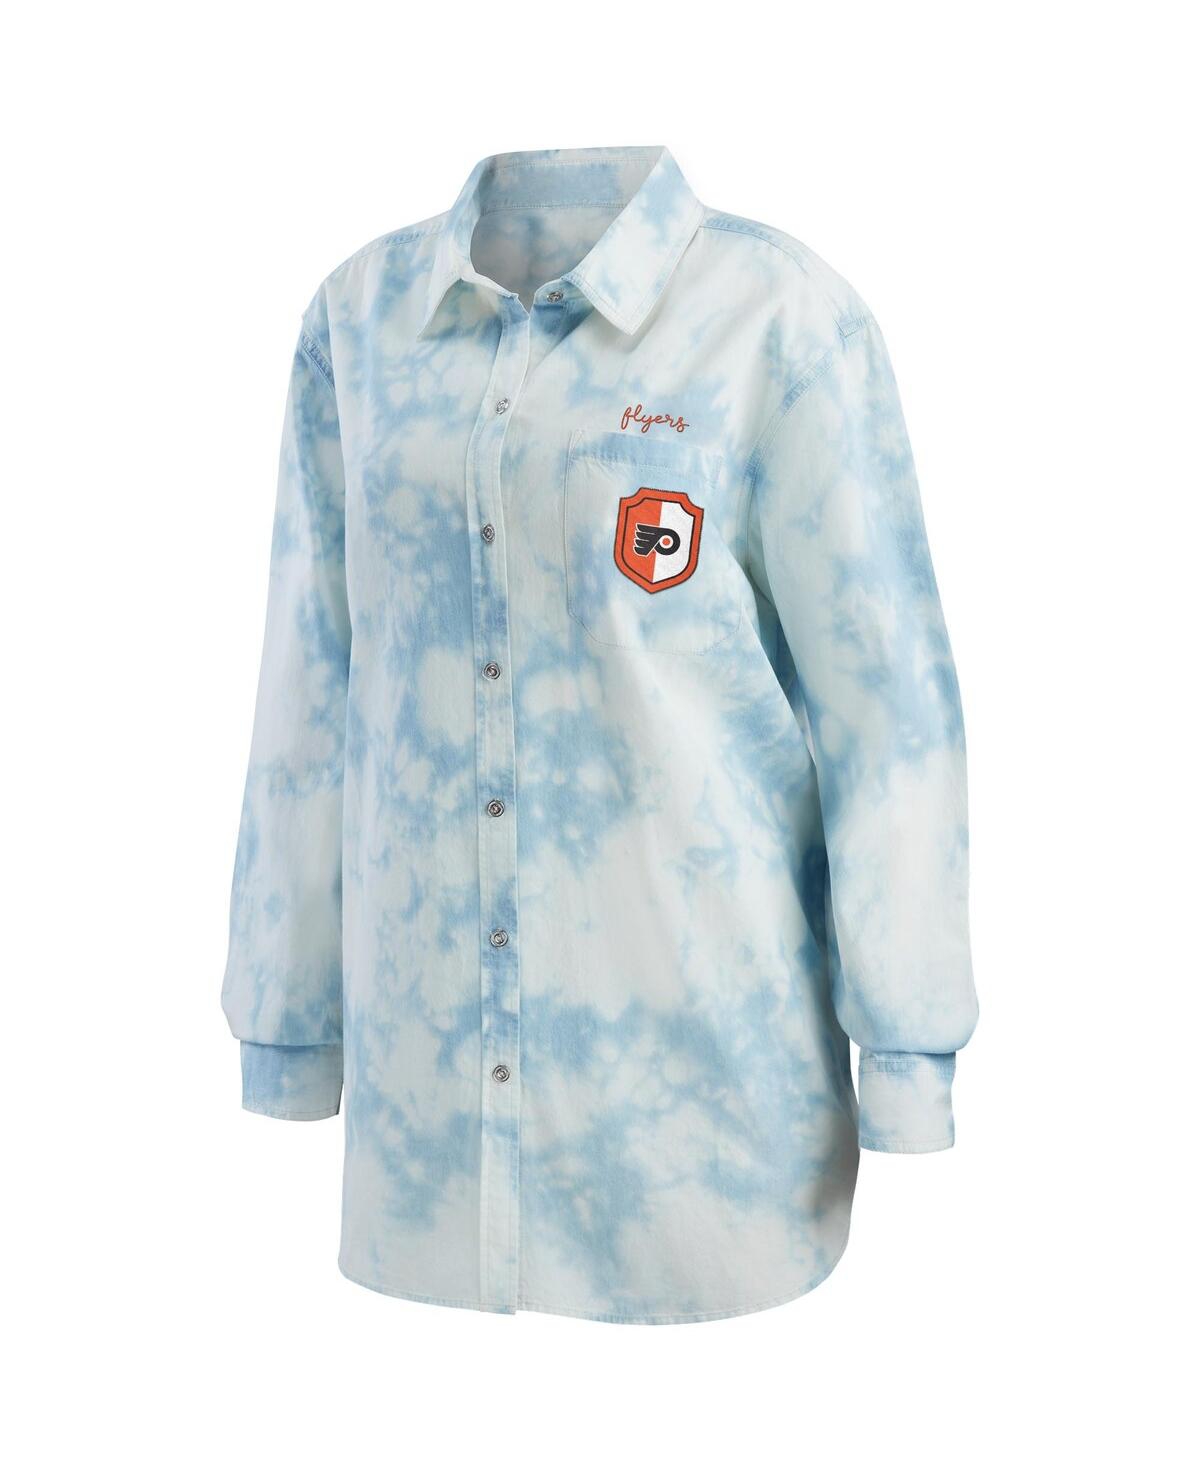 Shop Wear By Erin Andrews Women's  White Philadelphia Flyers Oversized Tie-dye Button-up Denim Shirt